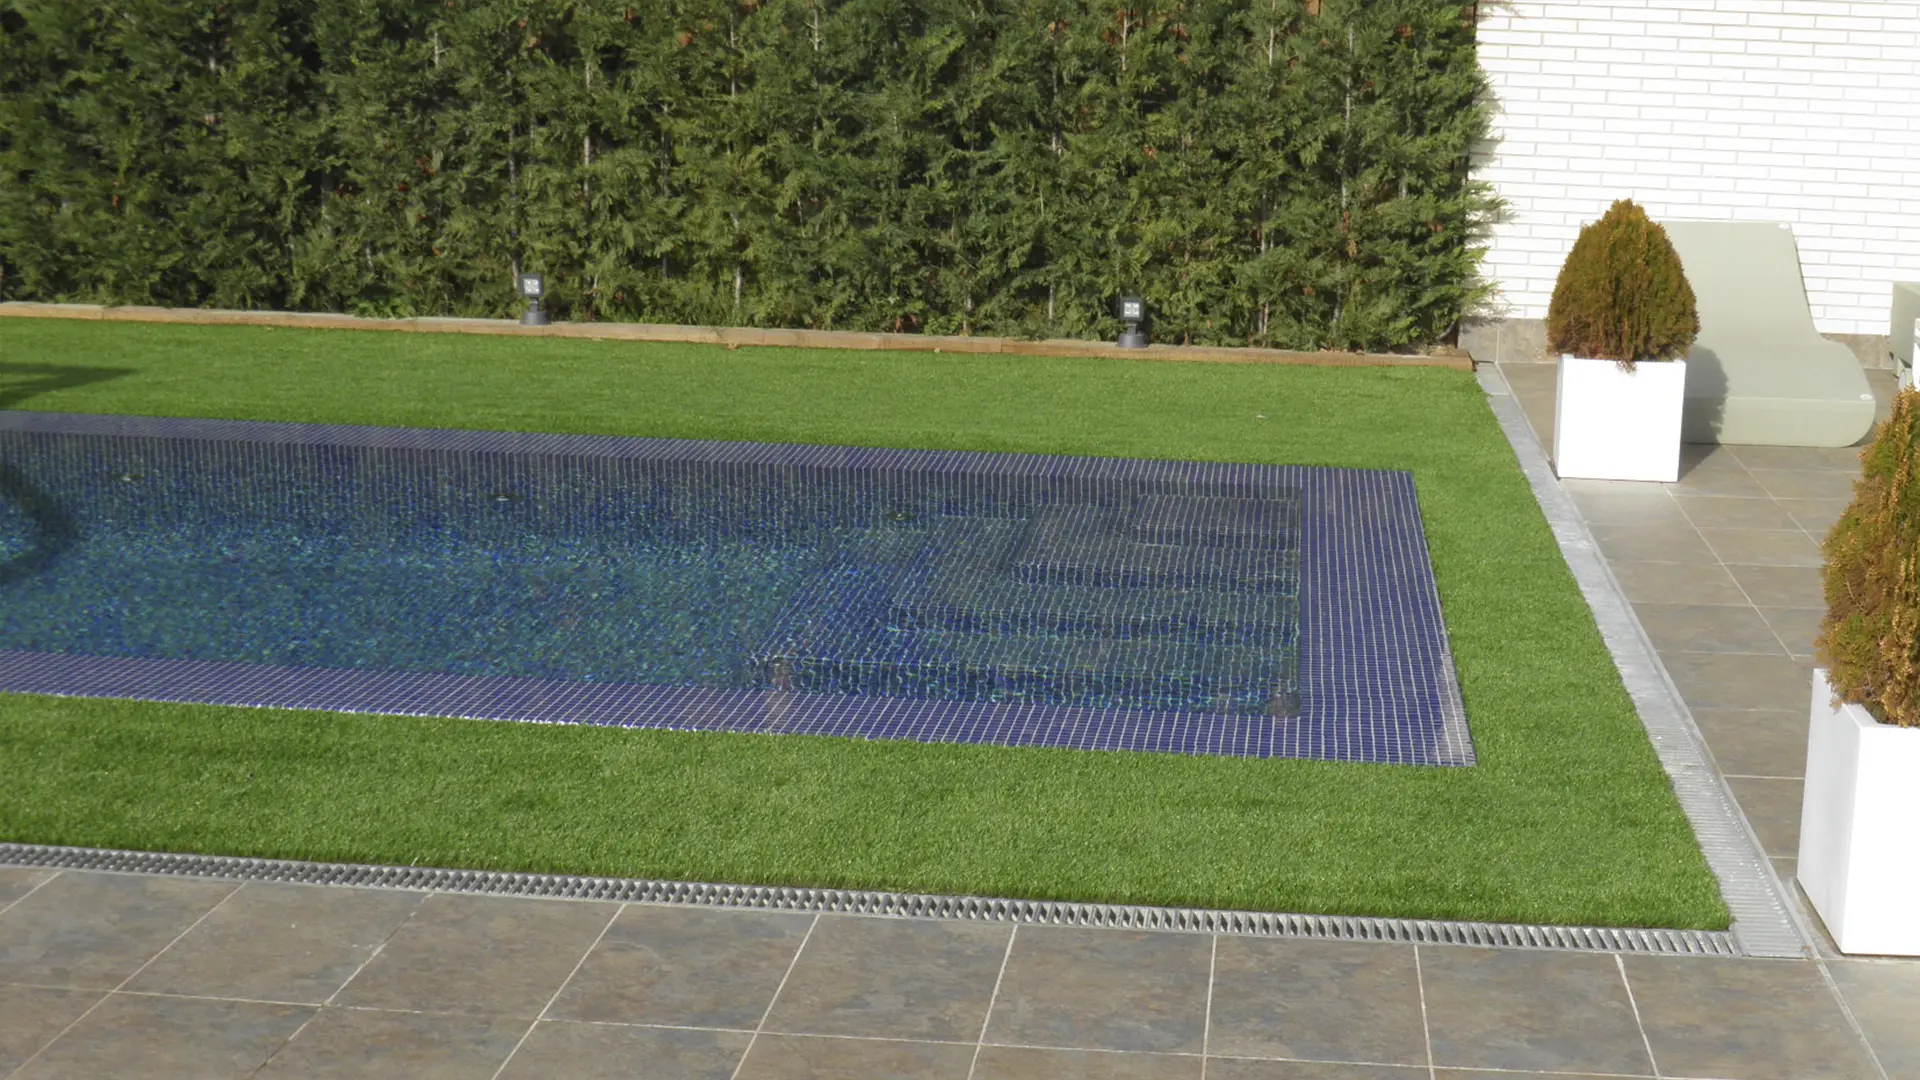 Una imagen lateral de la piscina donde se aprecia el brillo del agua en toda la superficie de la piscina incluyendo los bordes, los cuales quedan pocos milímetros bajo el agua permitiendo su desbordamiento.